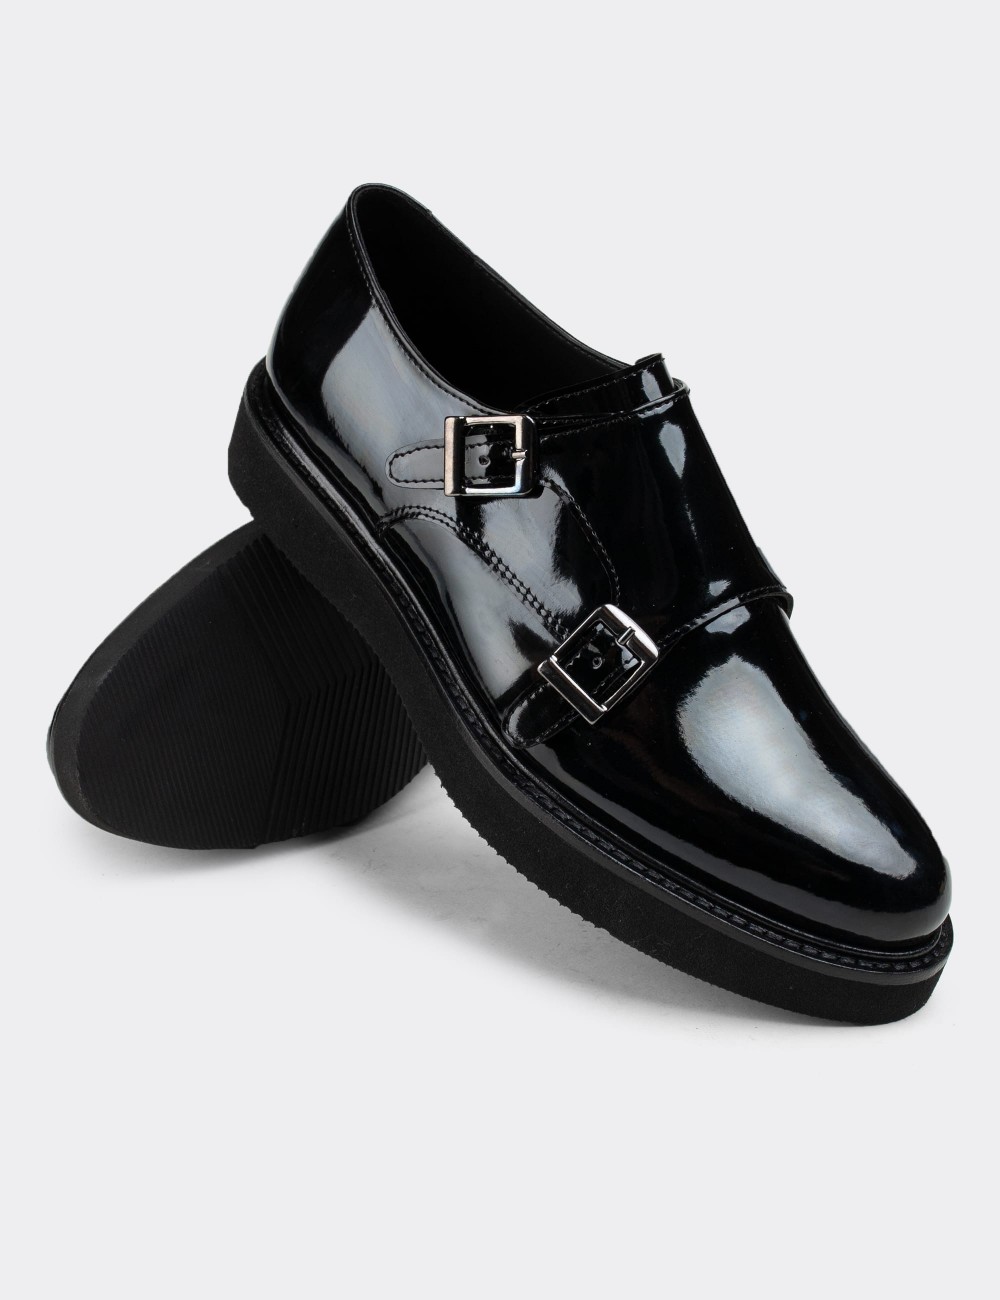 Black Patent Lace-up Shoes - 01614ZSYHE08